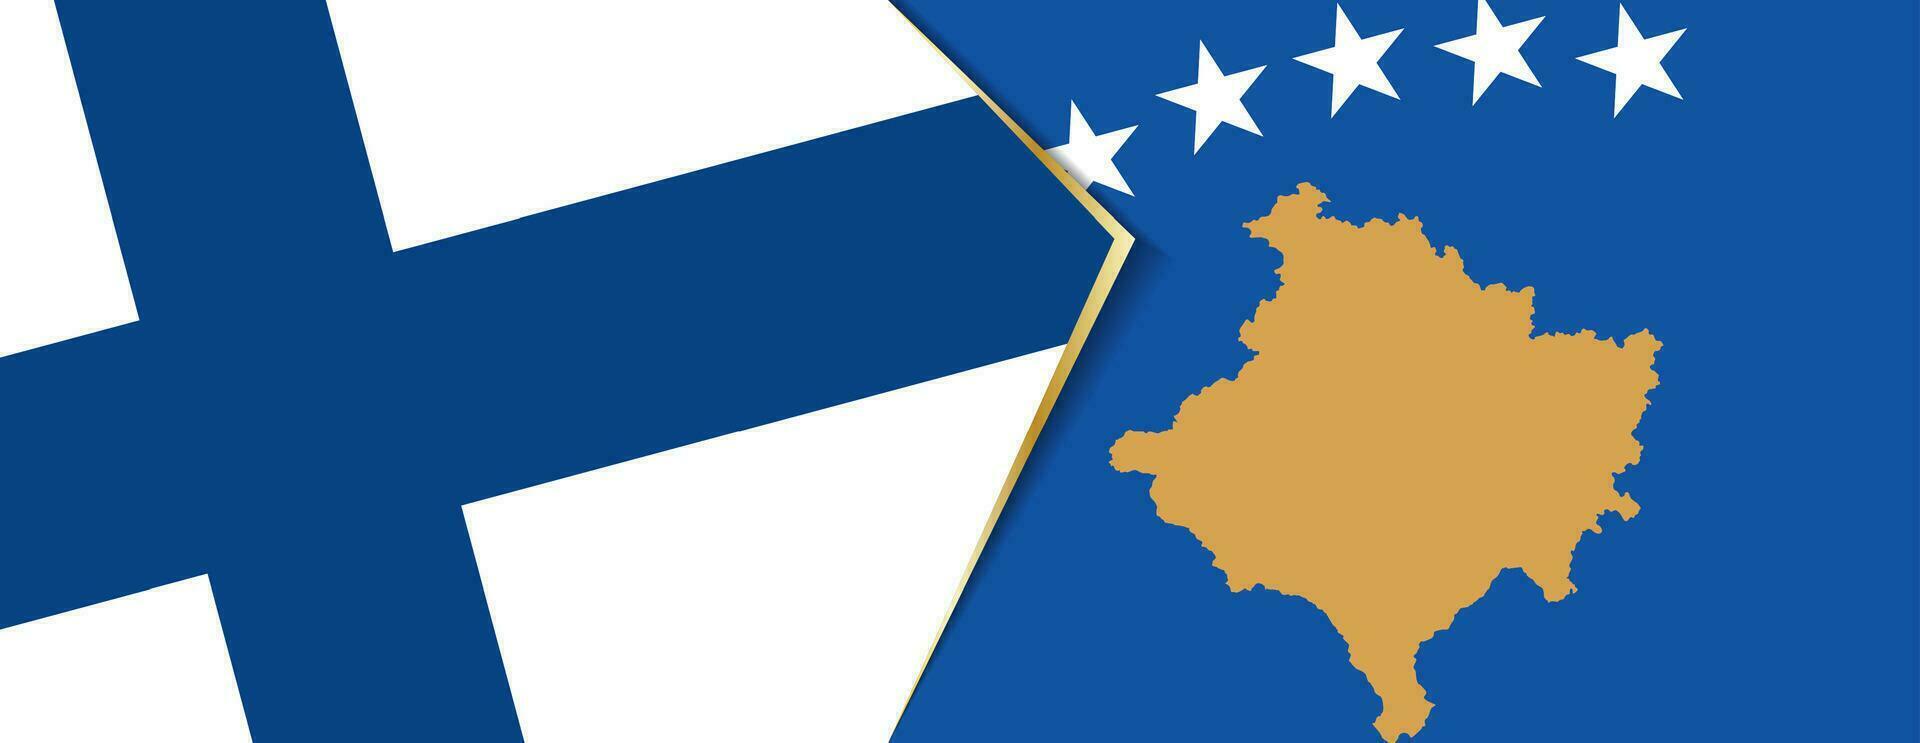 Finlande et kosovo drapeaux, deux vecteur drapeaux.